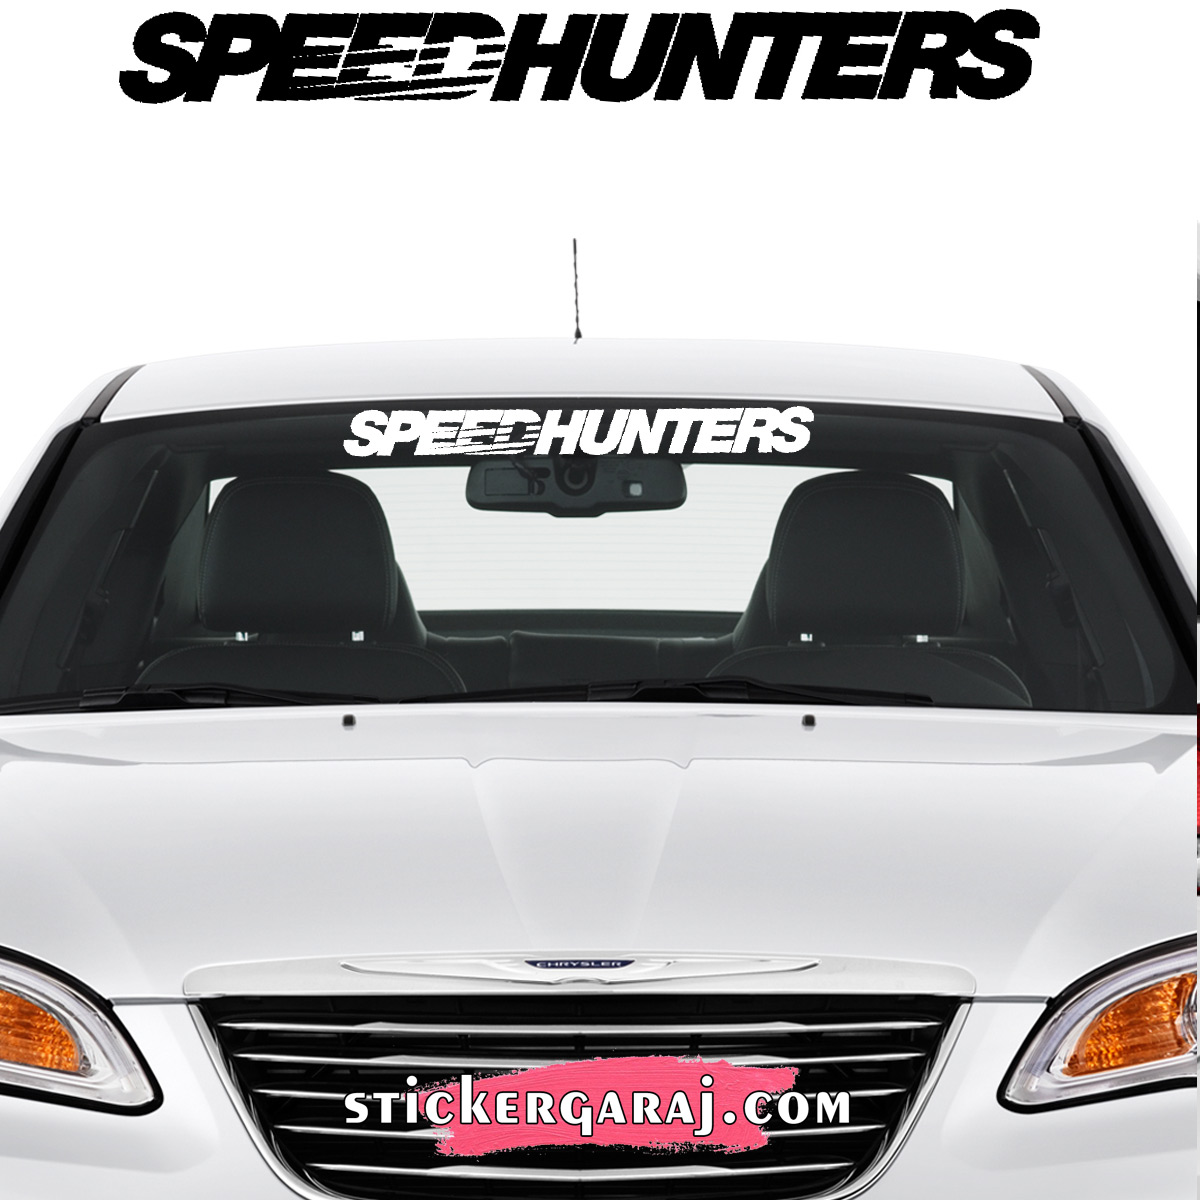 Toyota oto sticker 1 - Toyota cam sticker - speedhunters